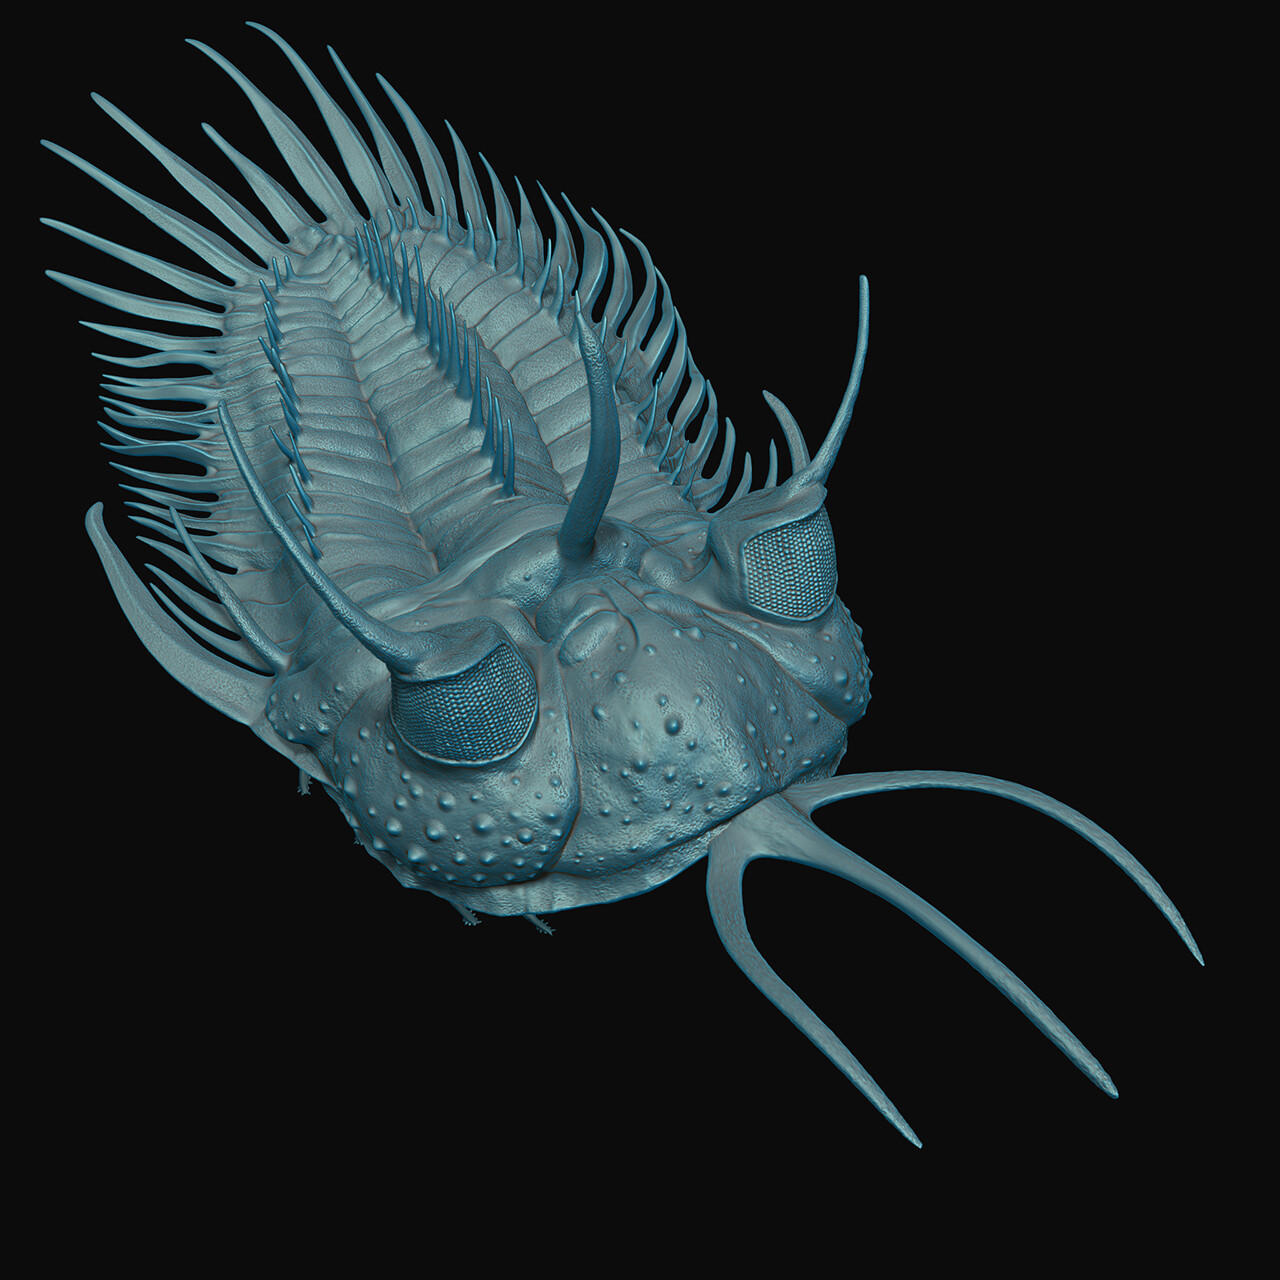 ZBrsuh render of the trilobite model